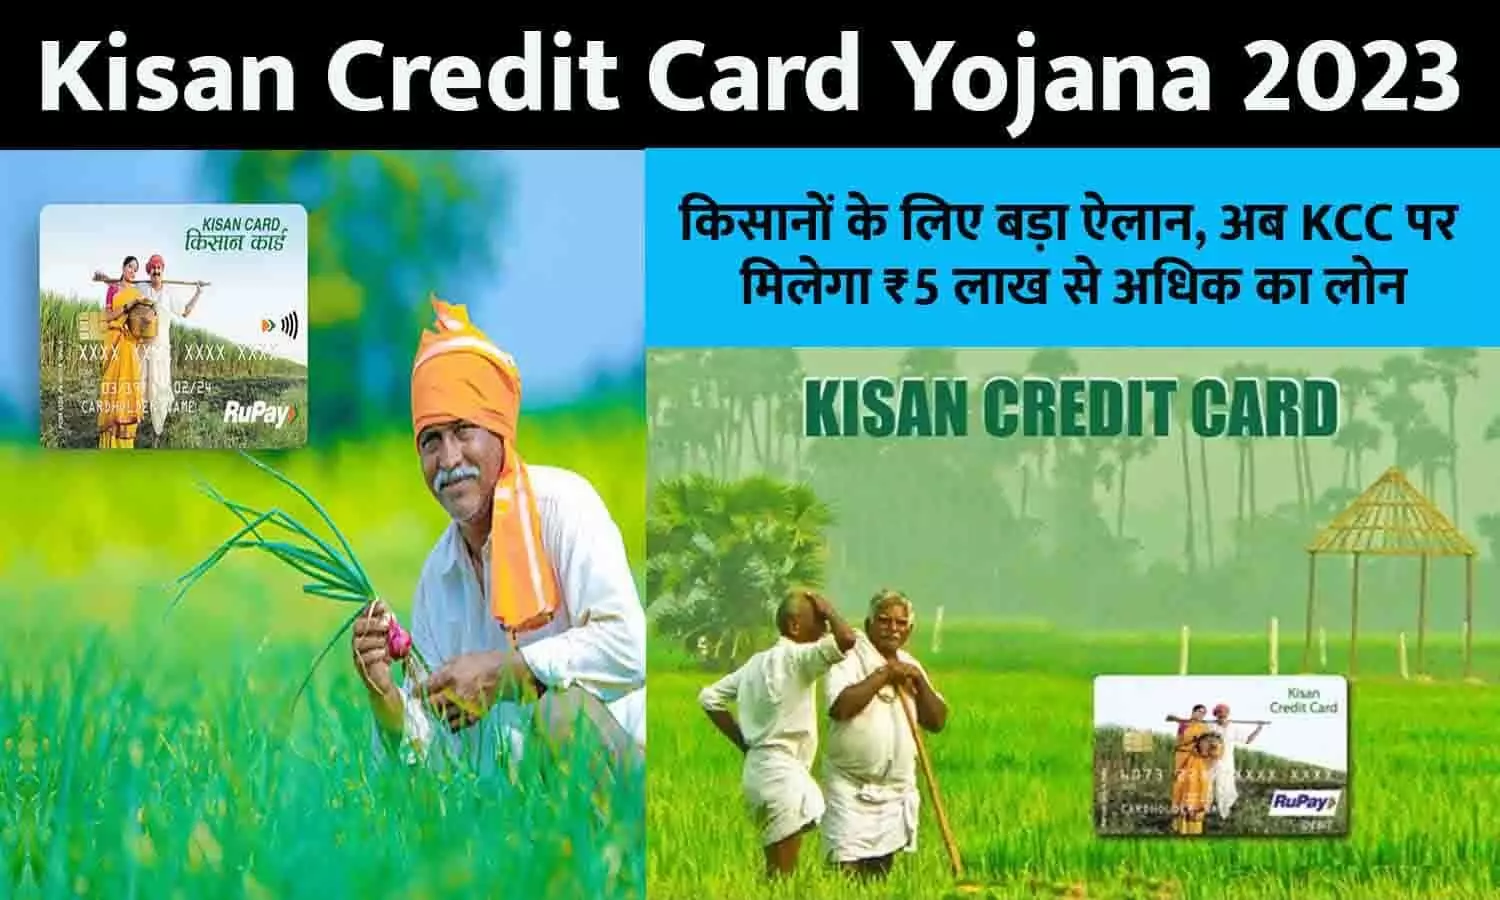 Kisan Credit Card Yojana In Hindi 2023: किसानों के लिए बड़ा ऐलान, अब KCC पर मिलेगा ₹5 लाख से अधिक का लोन, ऐसे उठाएं फायदा